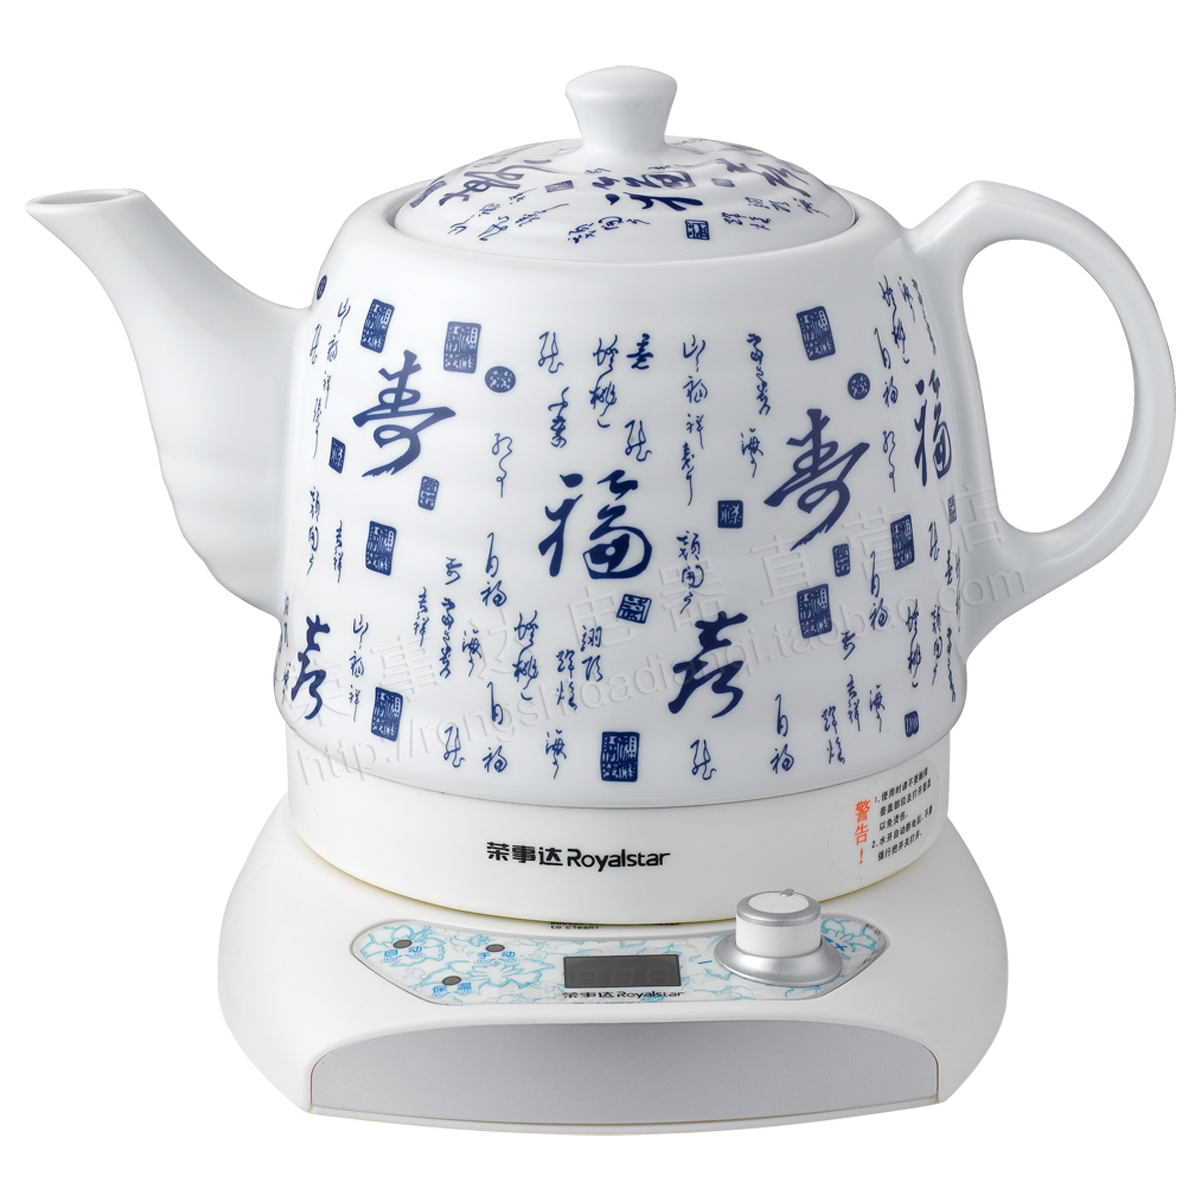 Купить Электрический чайник royalstar/Rongshida tc1061 керамический .